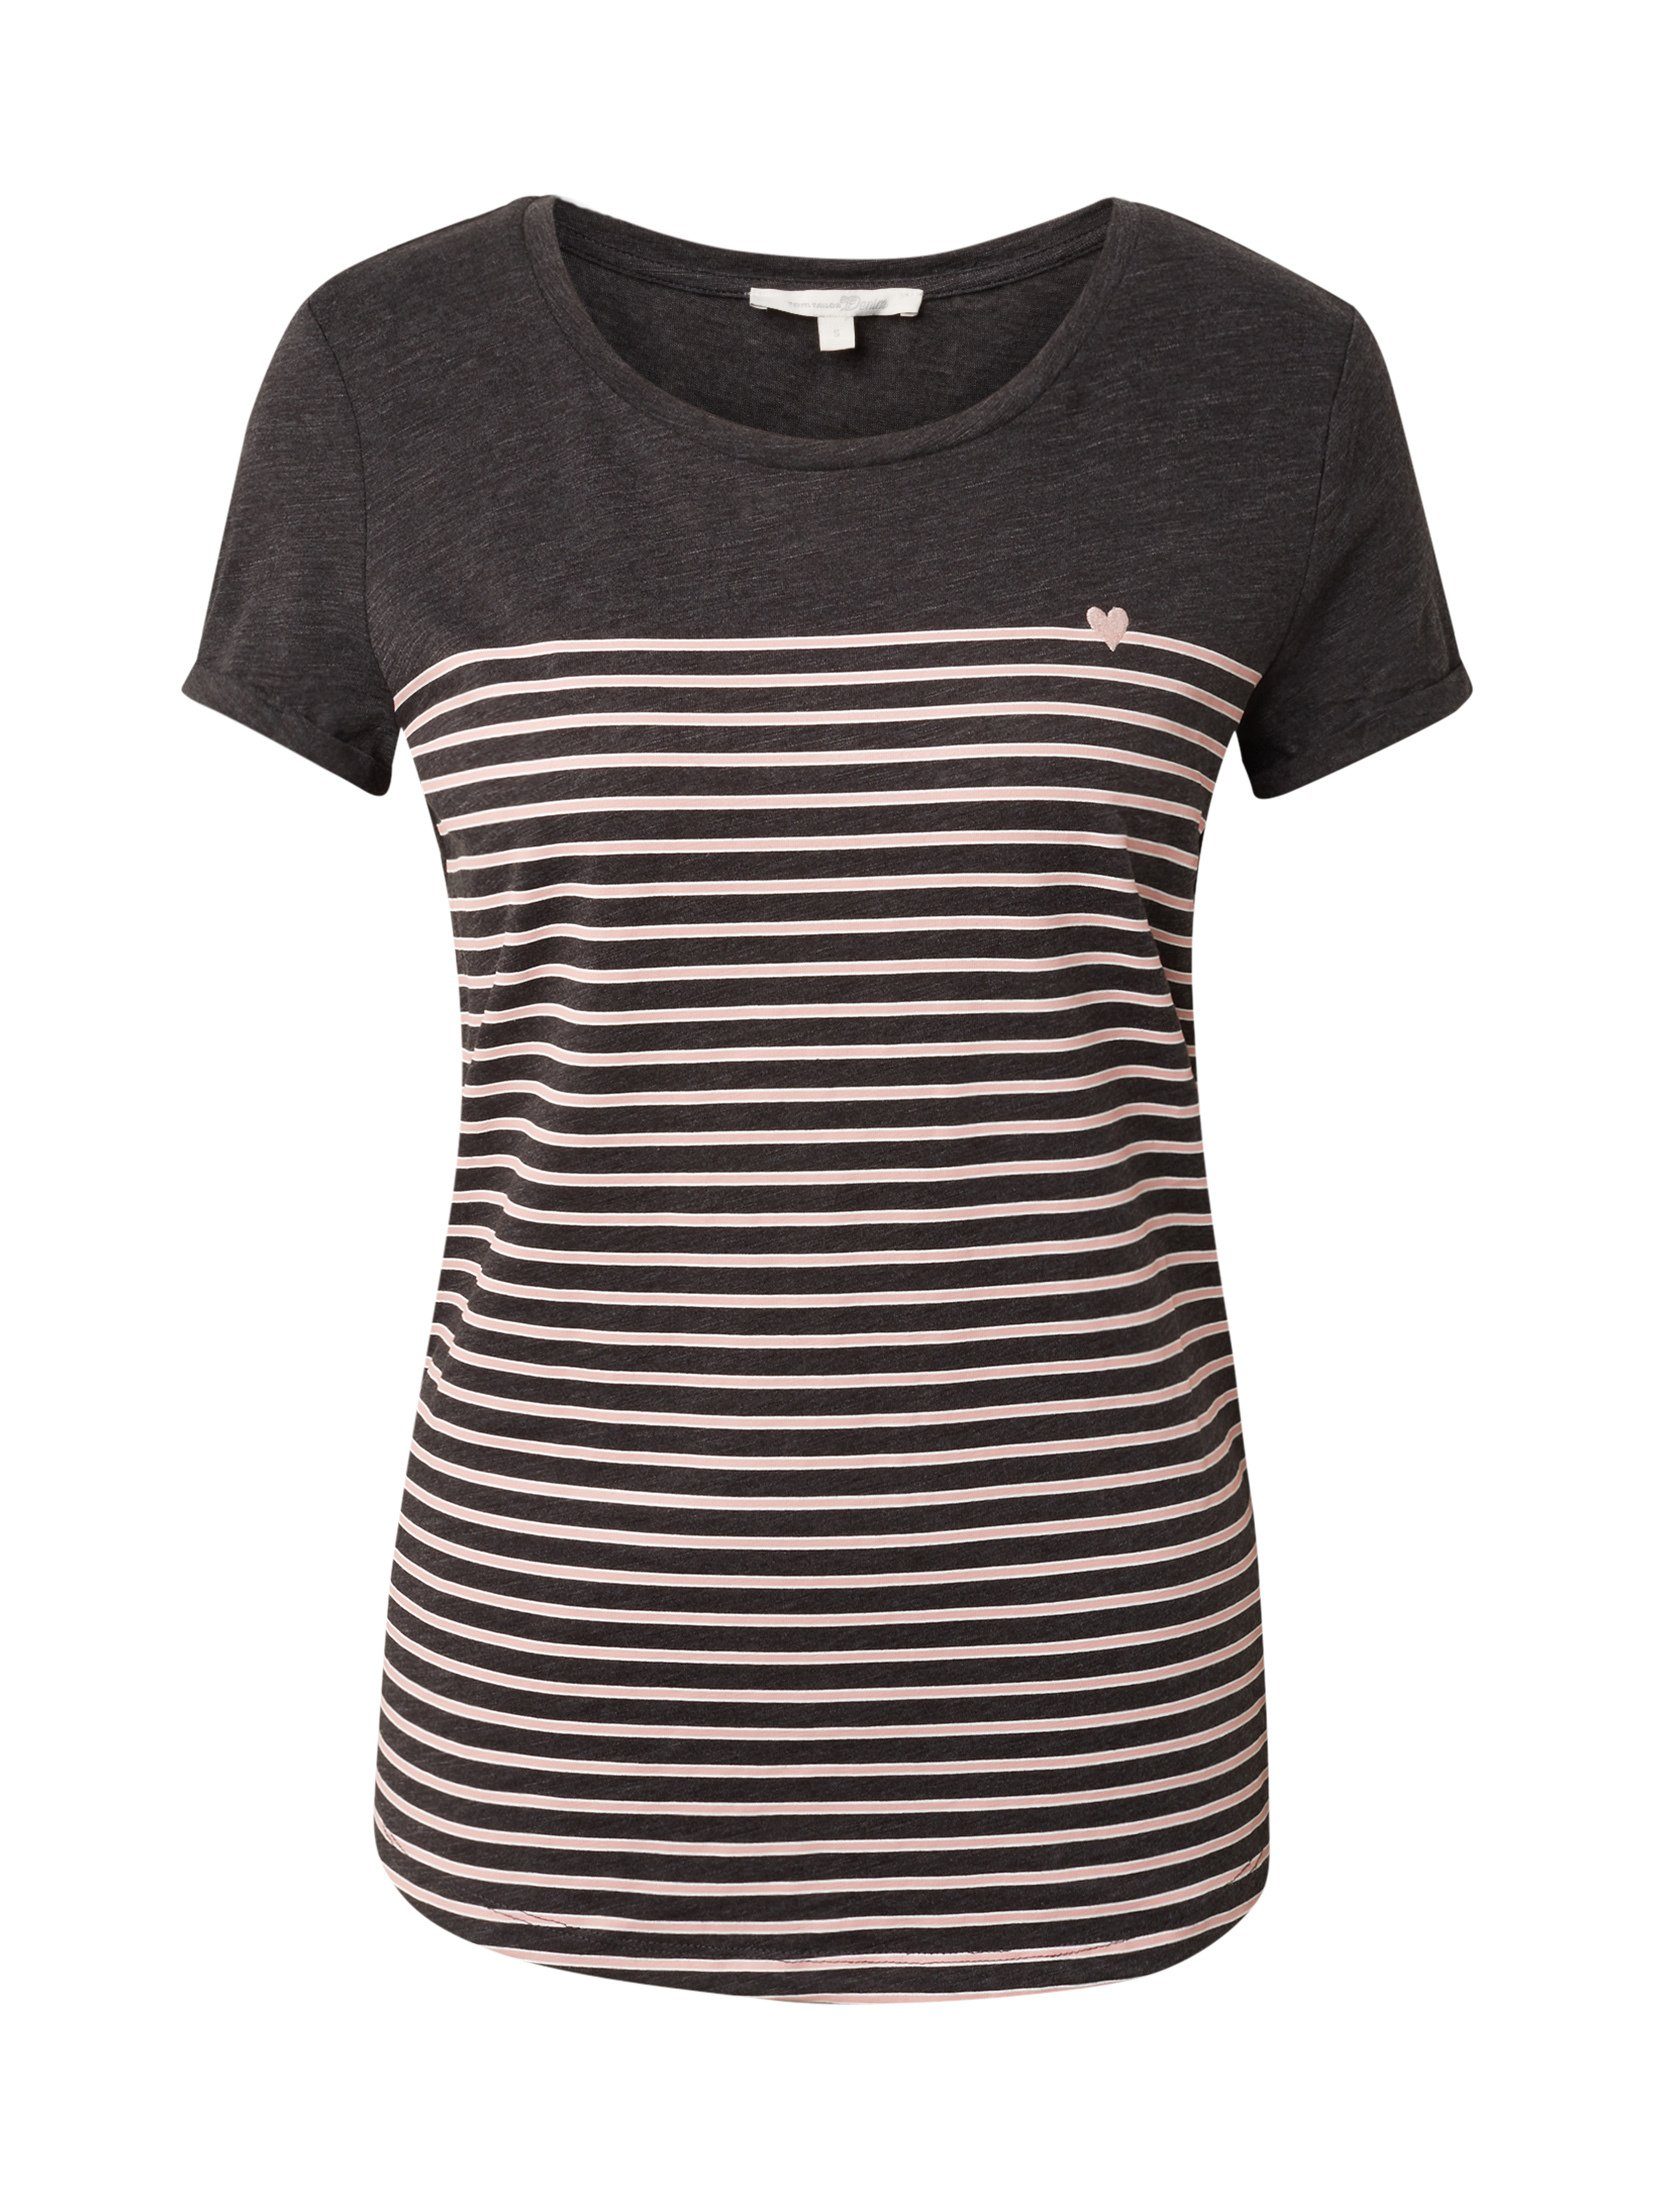 TAILOR grey T-Shirt rose Denim dark Gestreiftes stripe Langarmshirt TOM